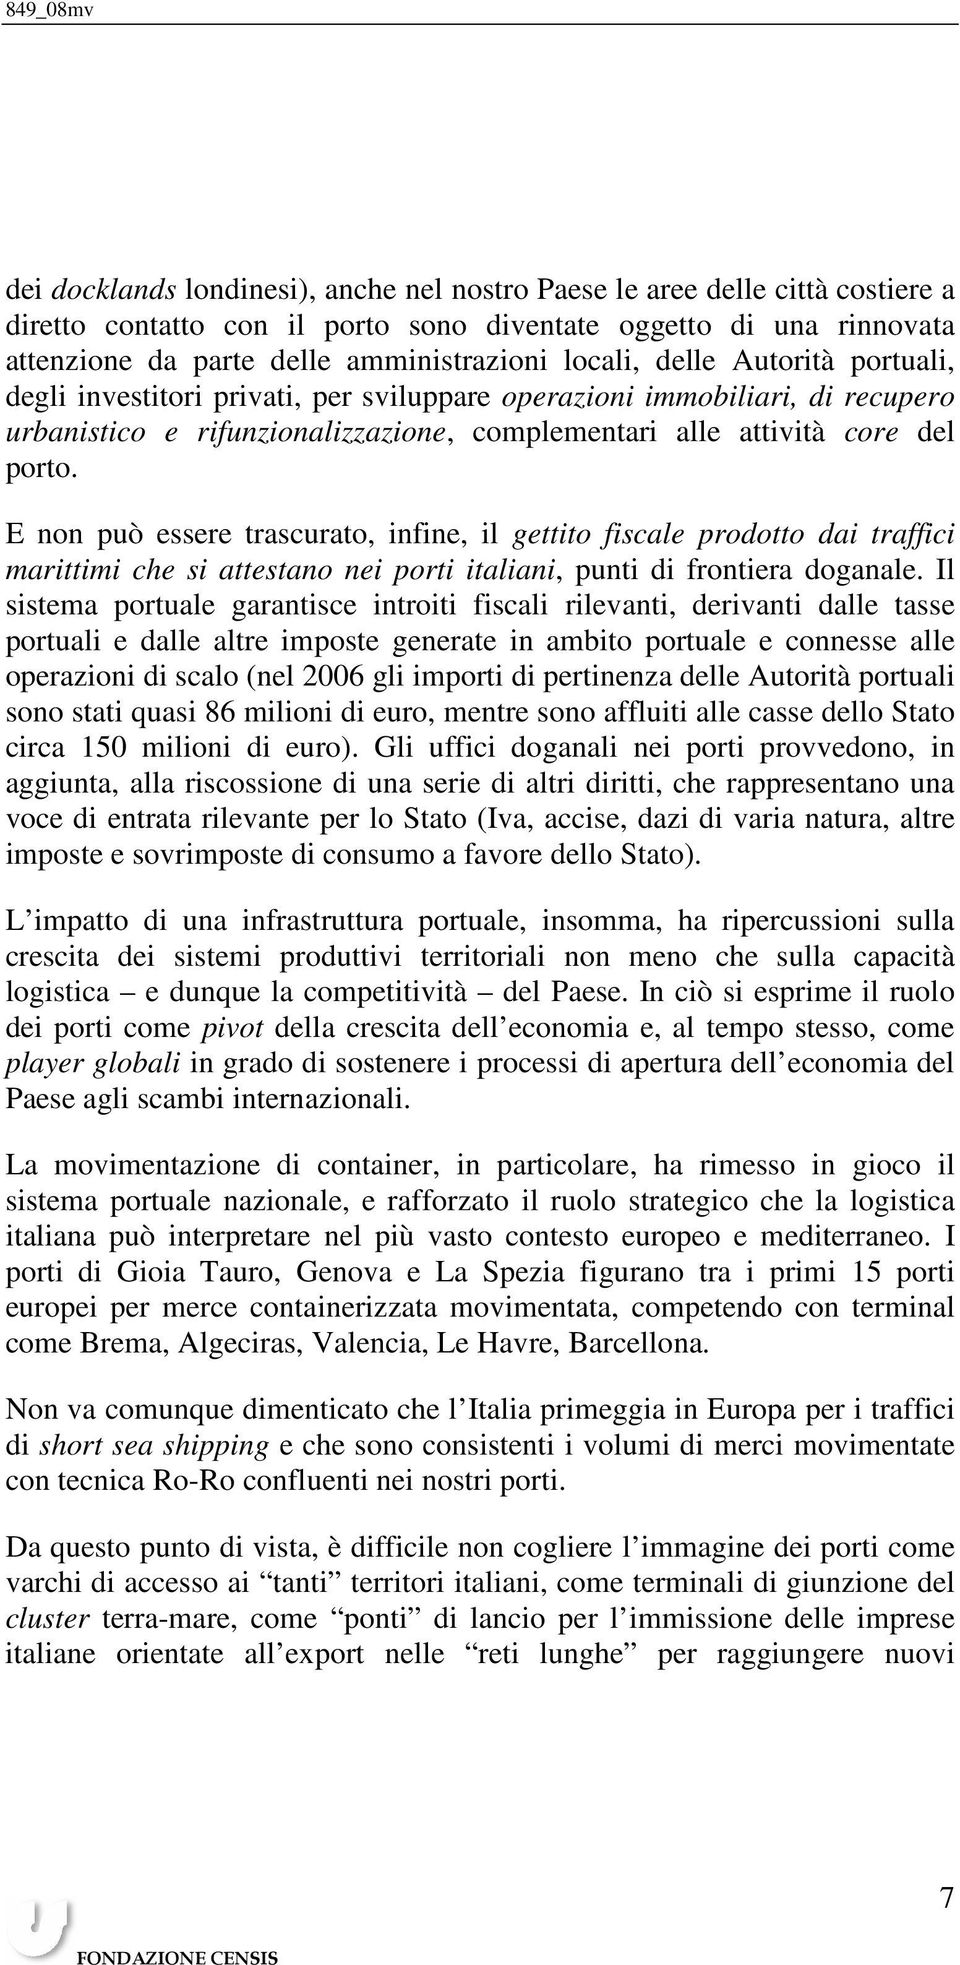 E non può essere trascurato, infine, il gettito fiscale prodotto dai traffici marittimi che si attestano nei porti italiani, punti di frontiera doganale.